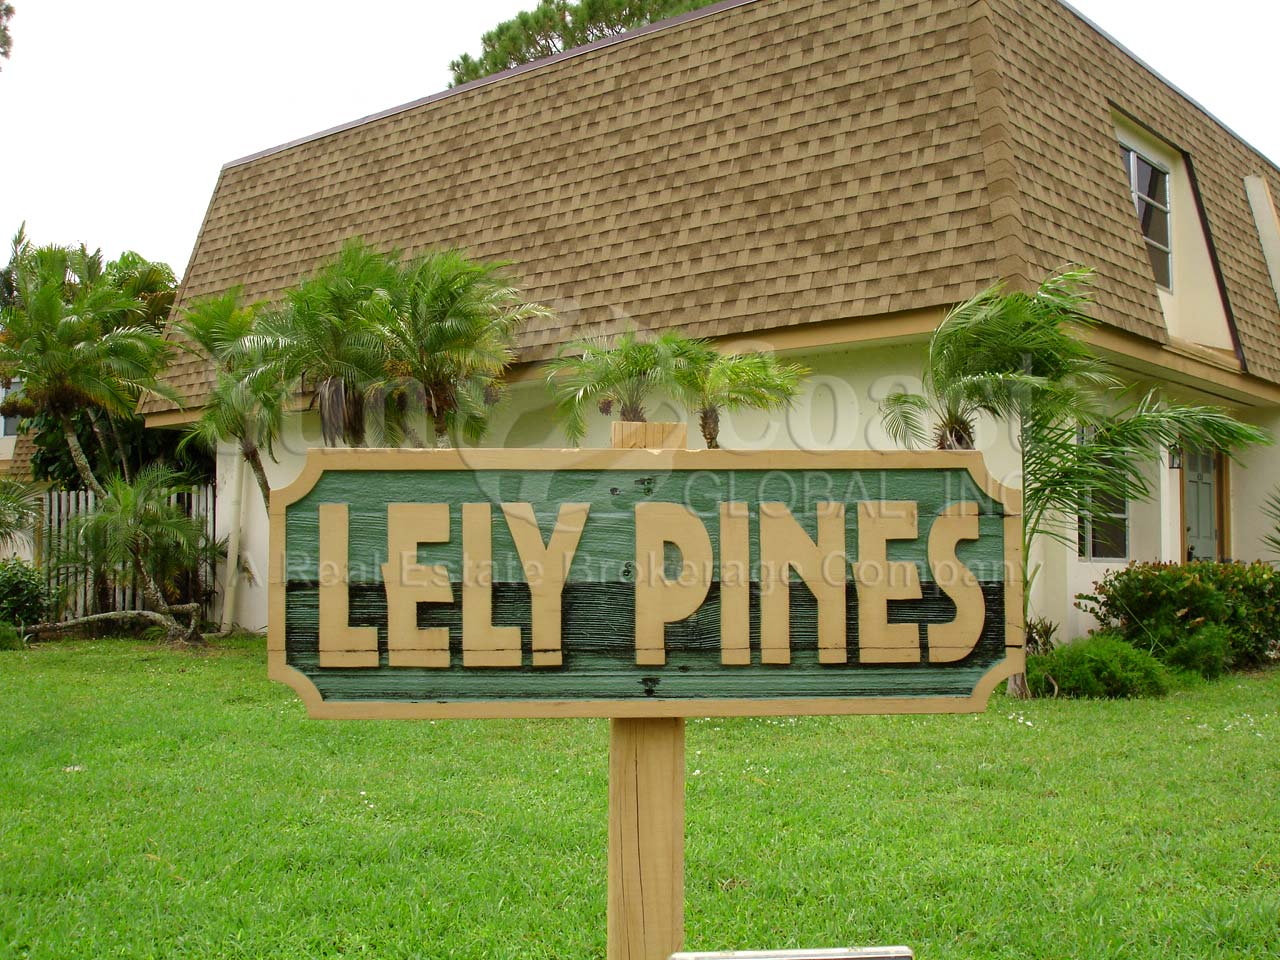 LELY PINES Signage